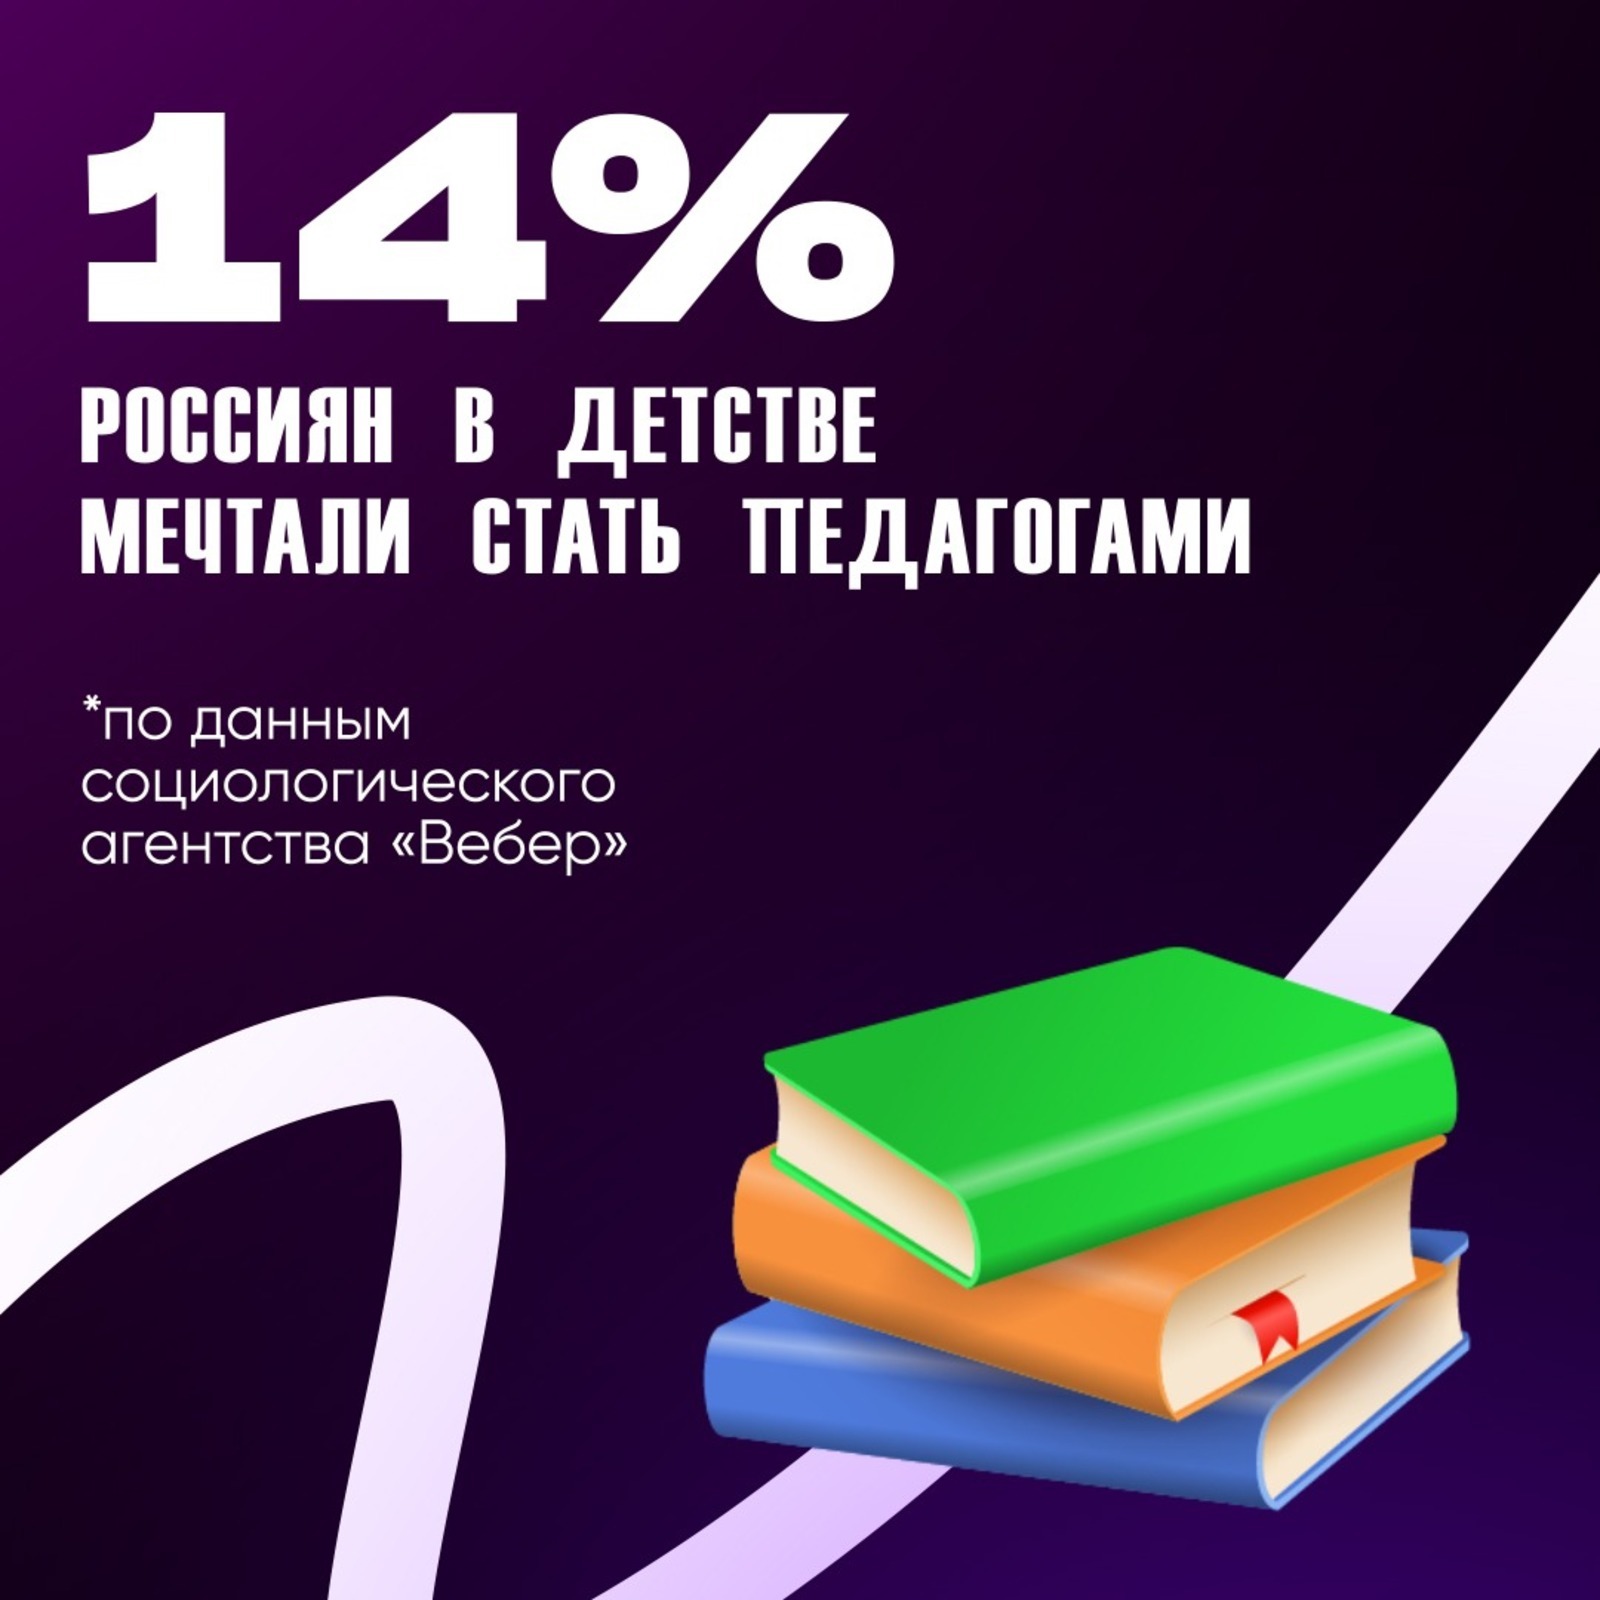 62% россиян уверены, что карьера и успех не зависят от хороших оценок – данные социологического агентства "Вебер"